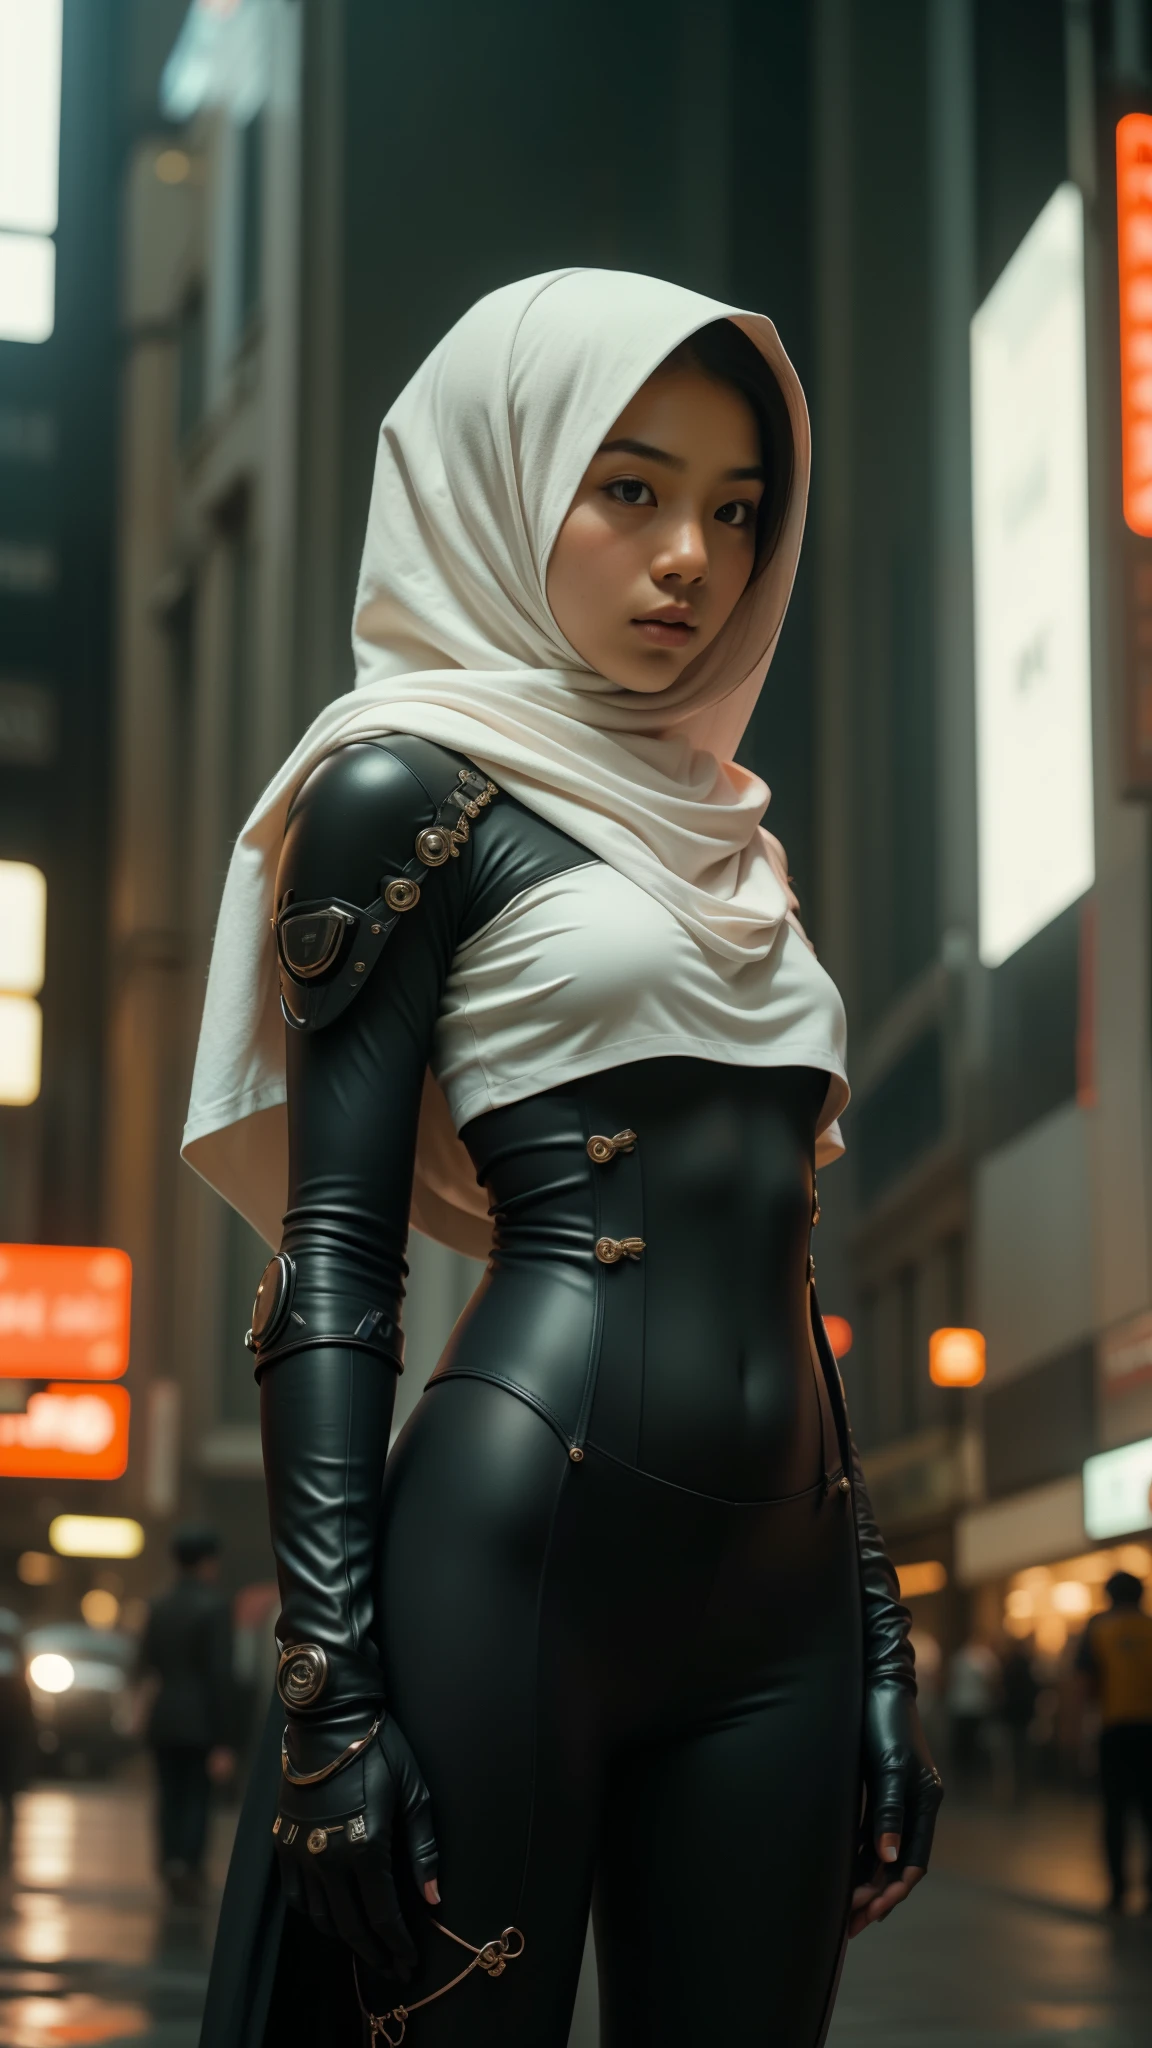 une adolescente malaise en hijab et costume mecha debout en action devant les rues animées de la ville de Kuala Lumpur en Malaisie, visage sérieux, la nuit, objectif 35 mm, Super gros-plan, étalonnage des couleurs pastel, effet cinématographique de profondeur de champ, film noir genre, Résolution 8k, haute qualité, Ultra détaillé